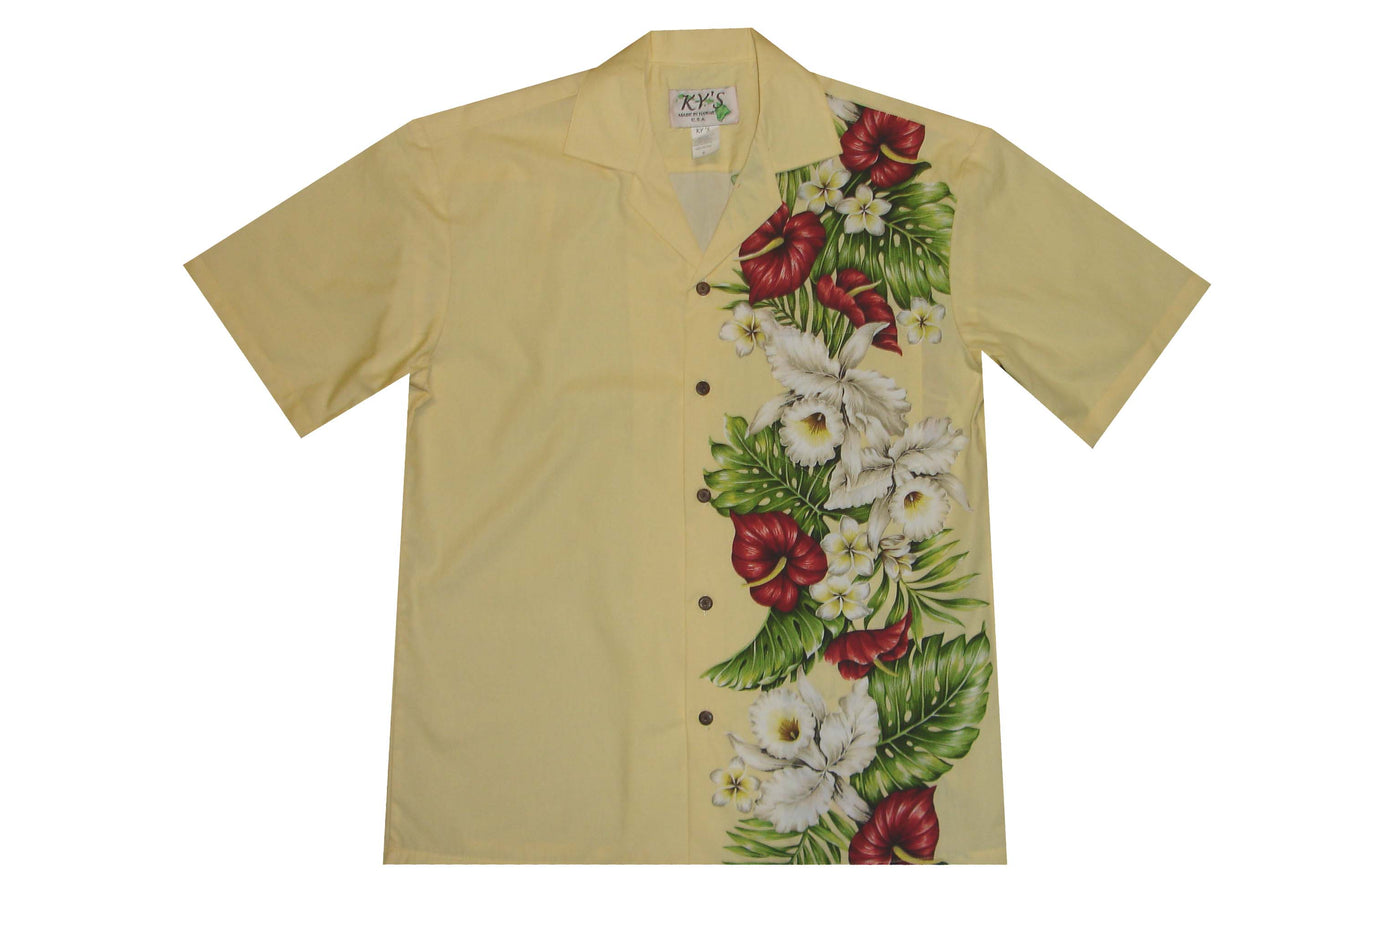 Kona Tropical Flower Cotton Aloha Shirt